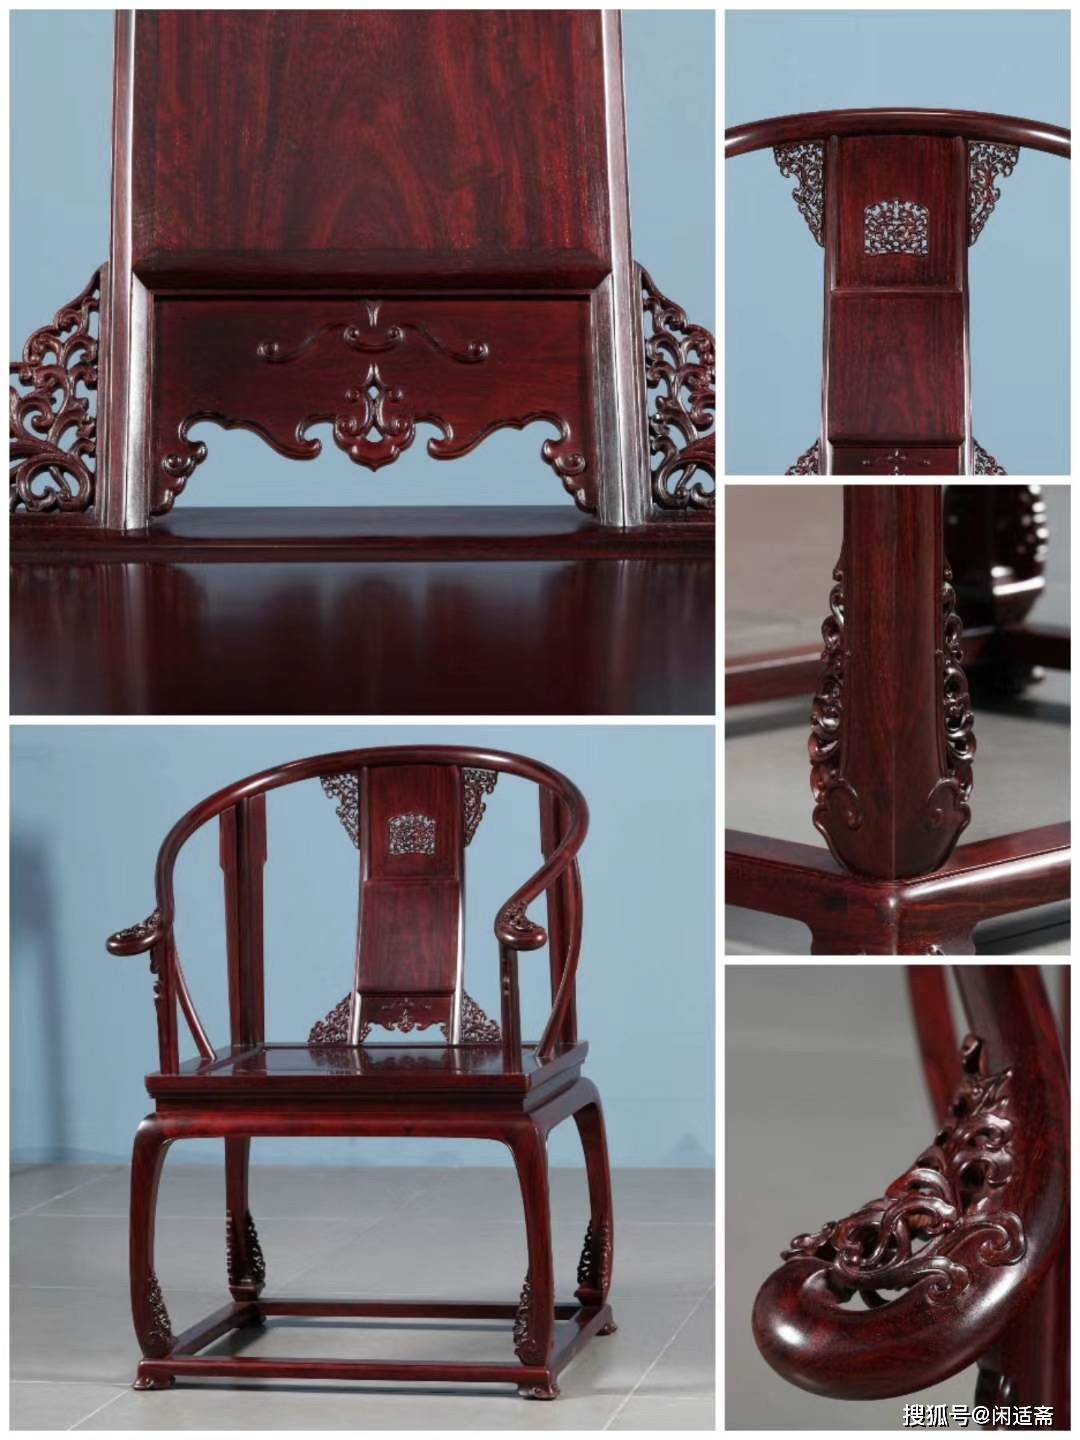 古法复刻,印度小叶紫檀,皇宫椅,明清木质家具